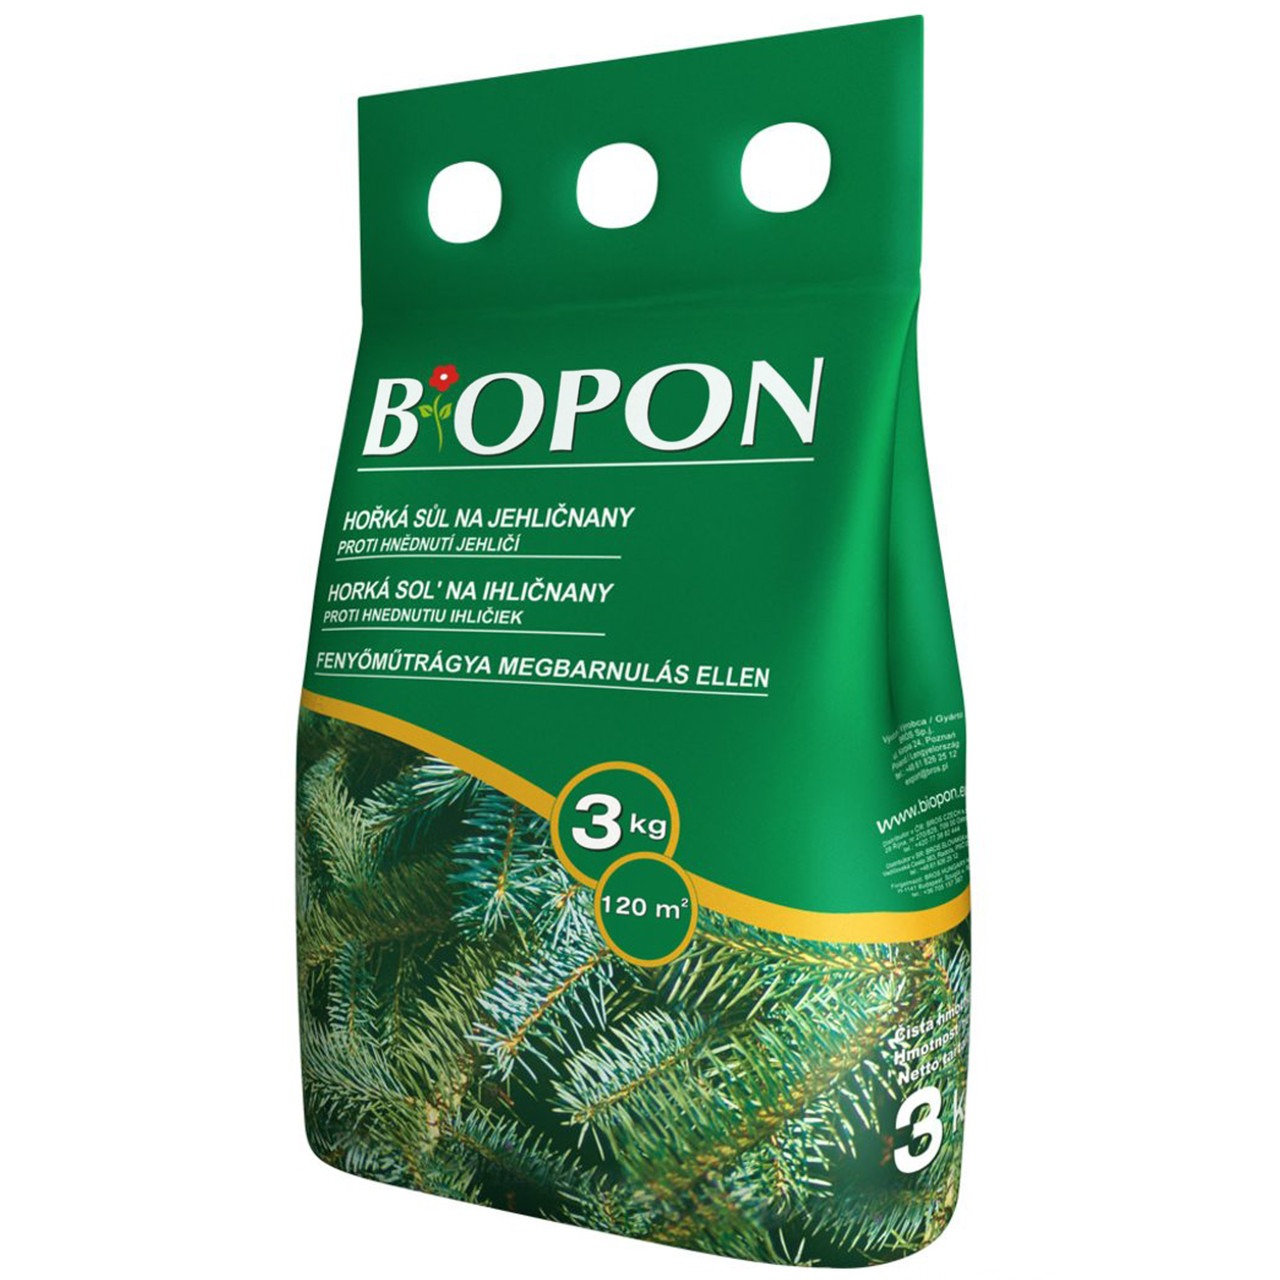 Удобрение Biopon Для хвойных растений против пожелтения 3 кг - фото 1